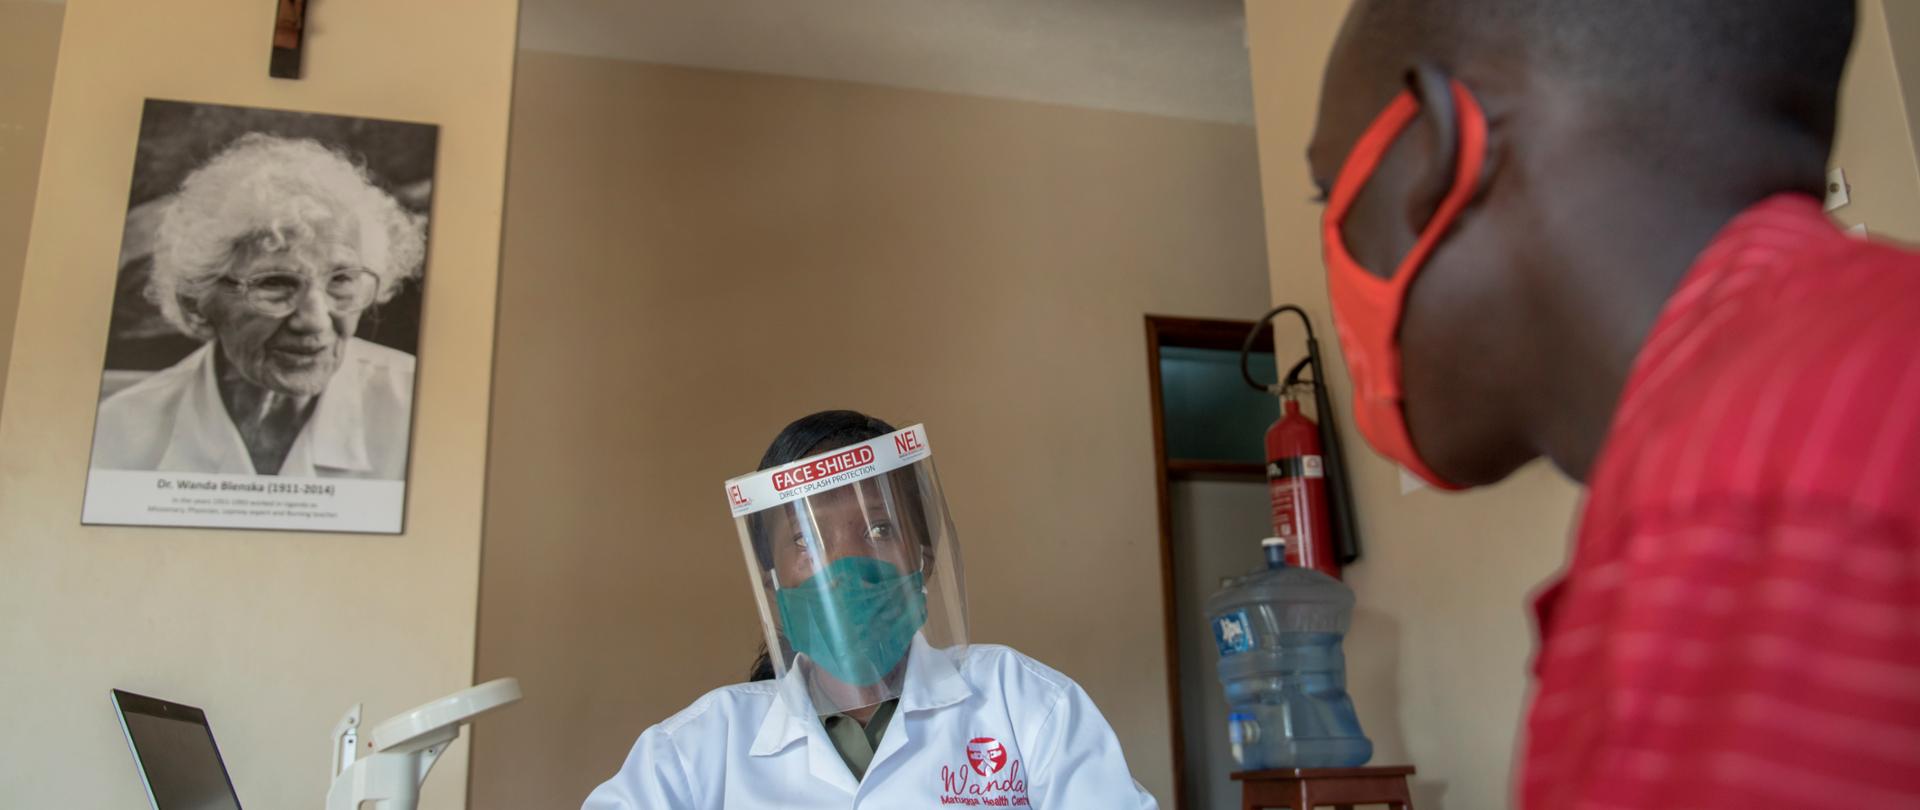 Poland helps Uganda’s Wanda Matugga Health Centre photo:InnovAid